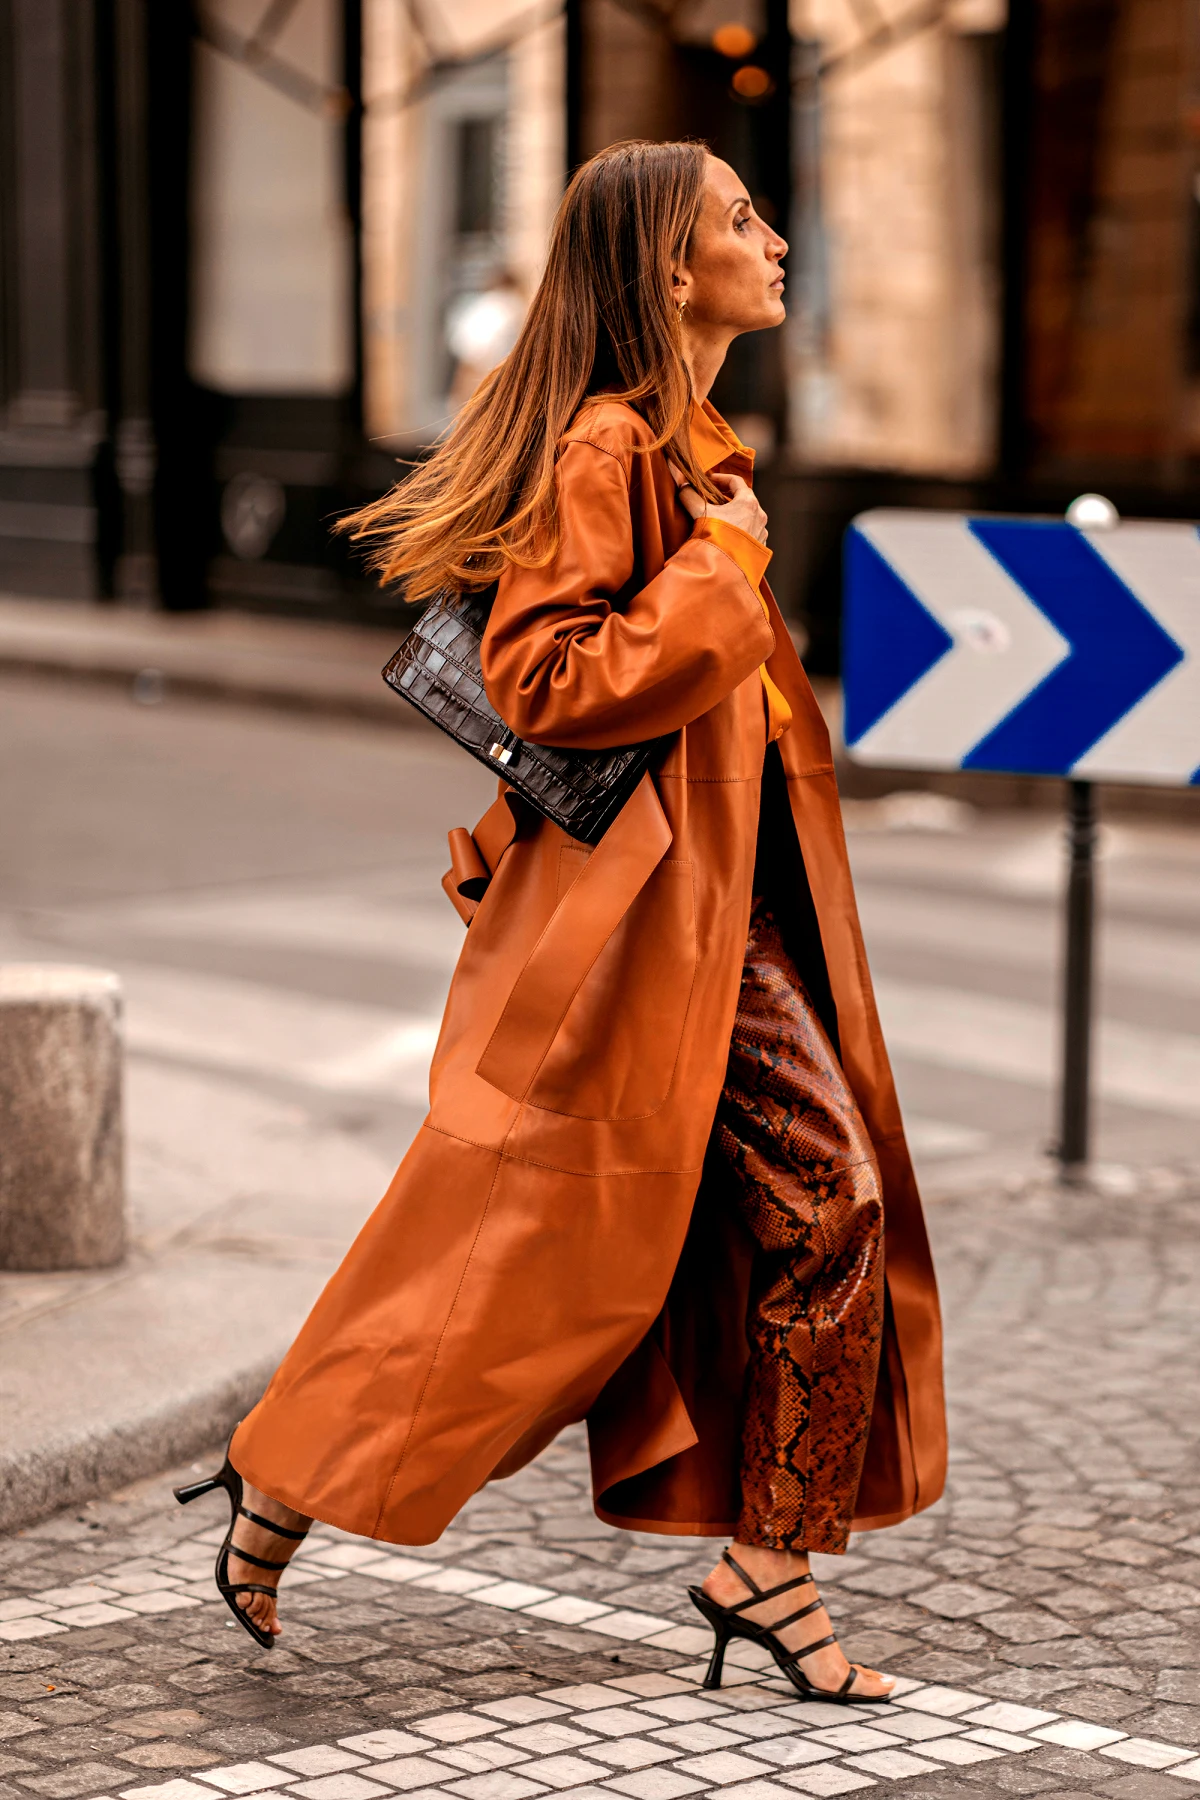 comment s habiller apres 60 ans conseils de mode tenue marron